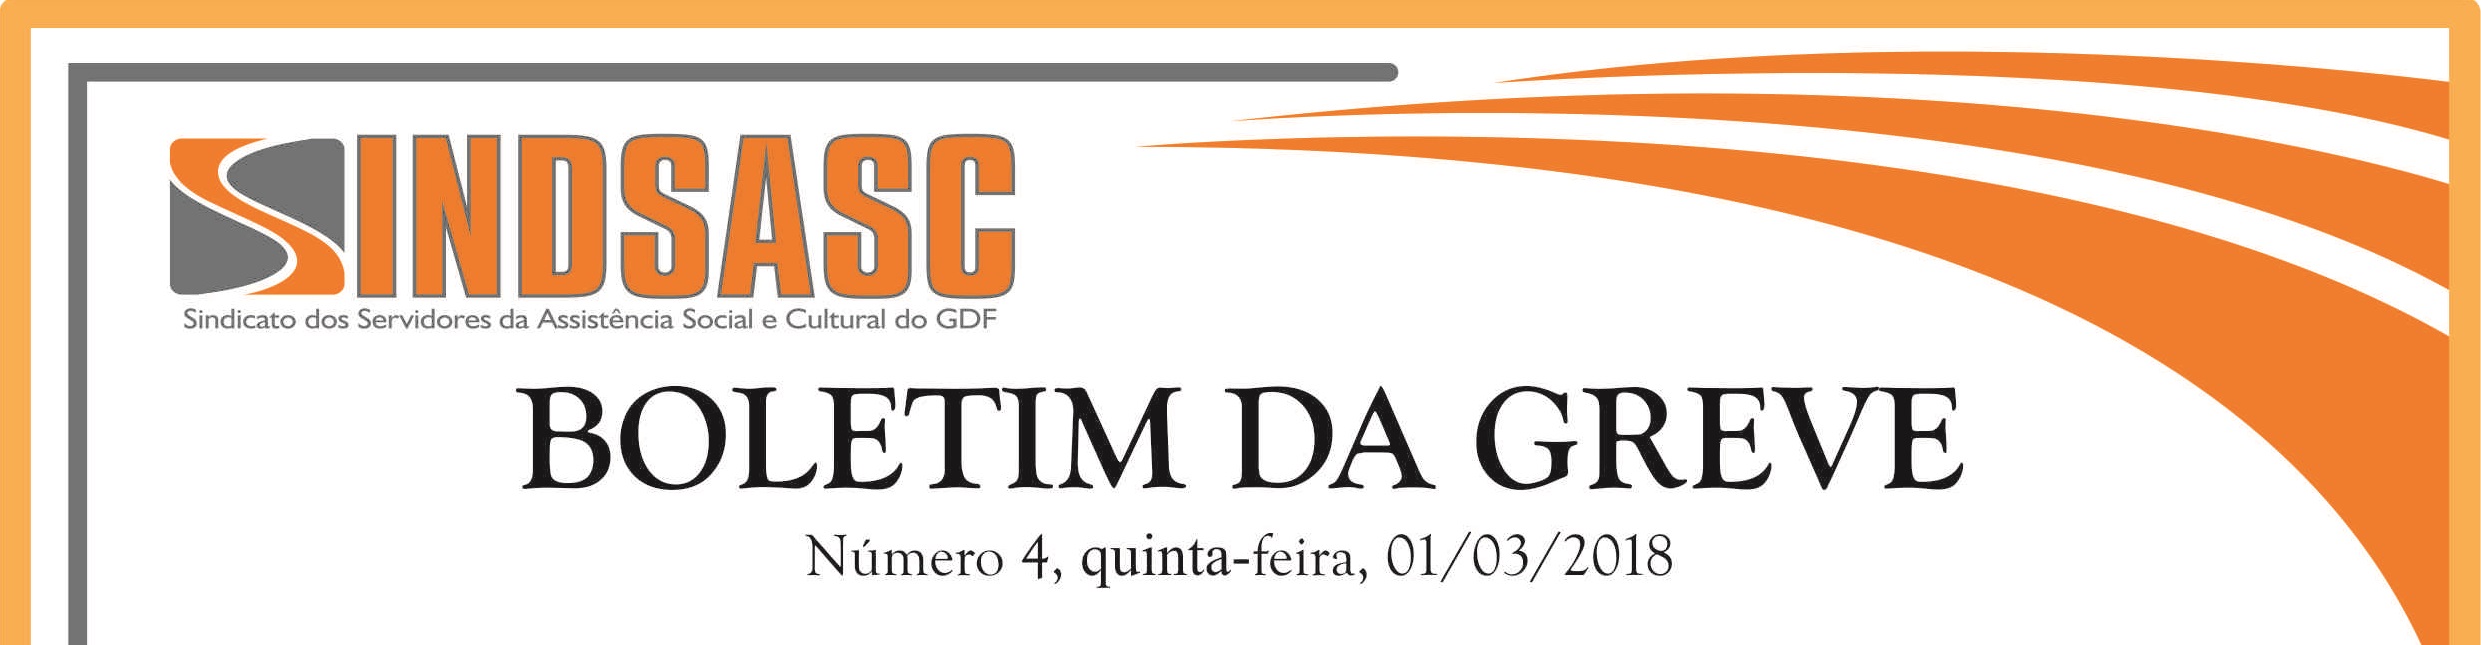 BOLETIM DA GREVE - NÚMERO 4 - QUINTA-FEIRA - 01/03/2018